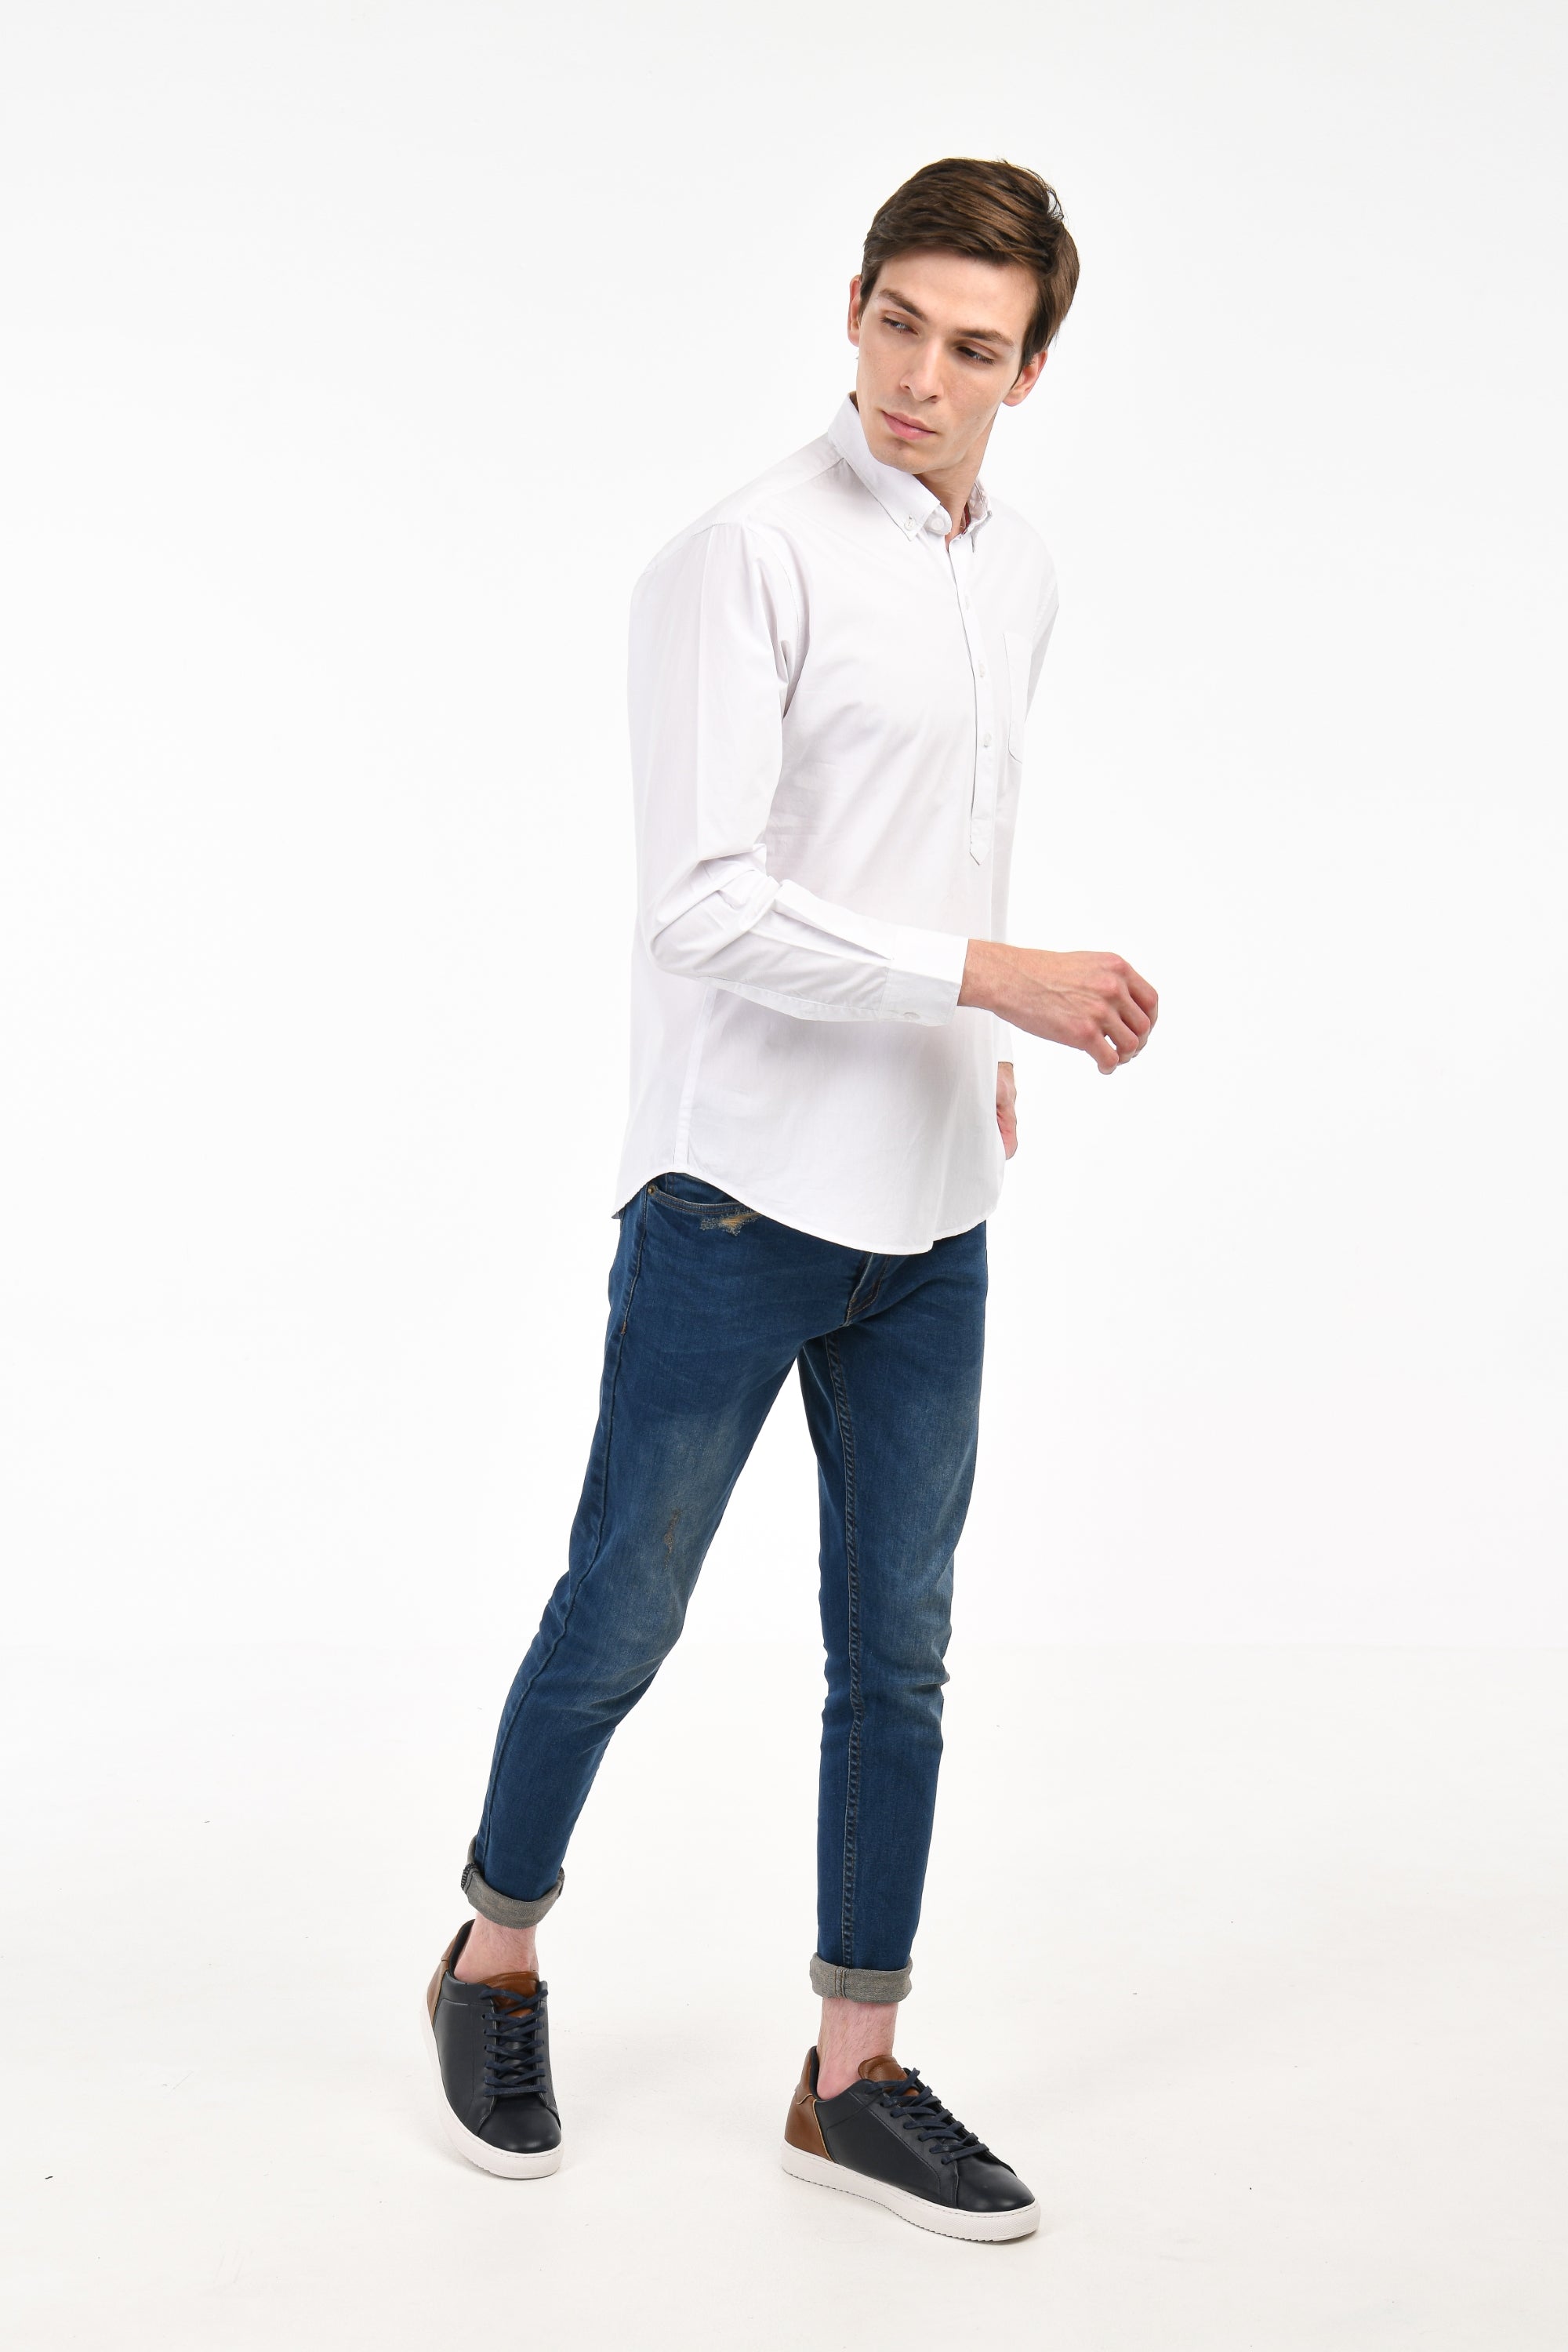 Essential White Shirt